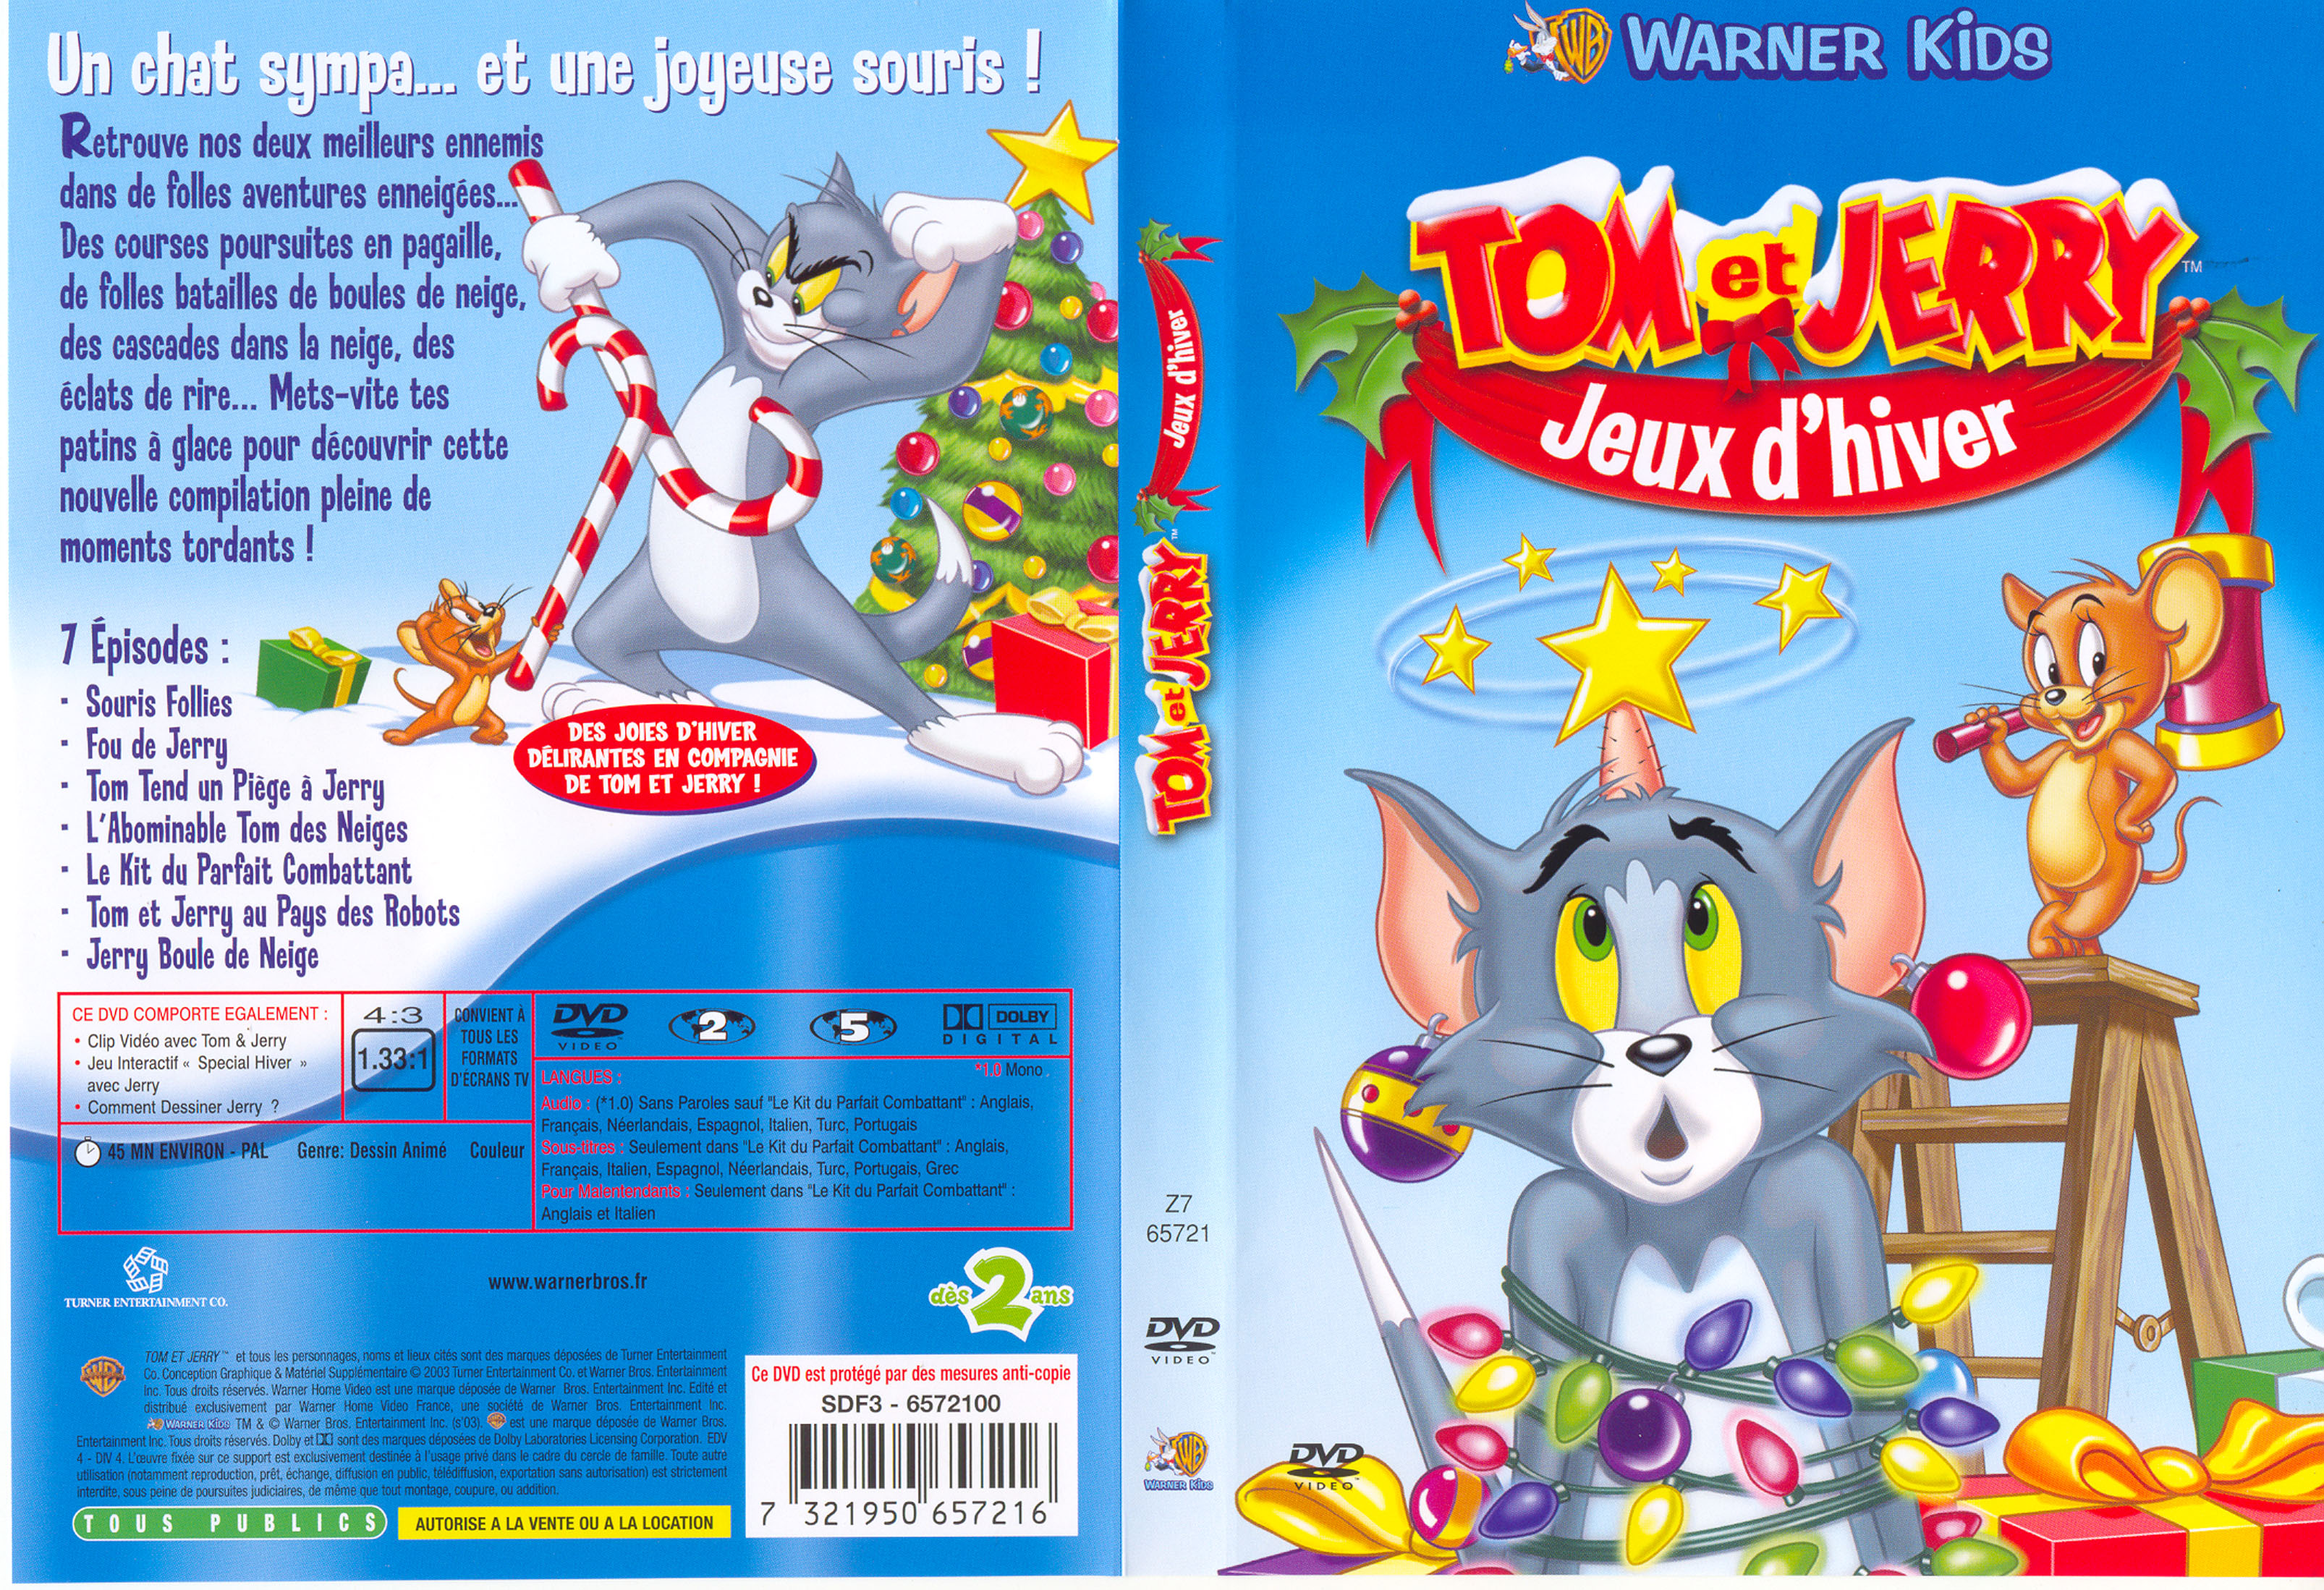 Jaquette DVD Tom et Jerry JEUX d'hiver - CinémaPassion